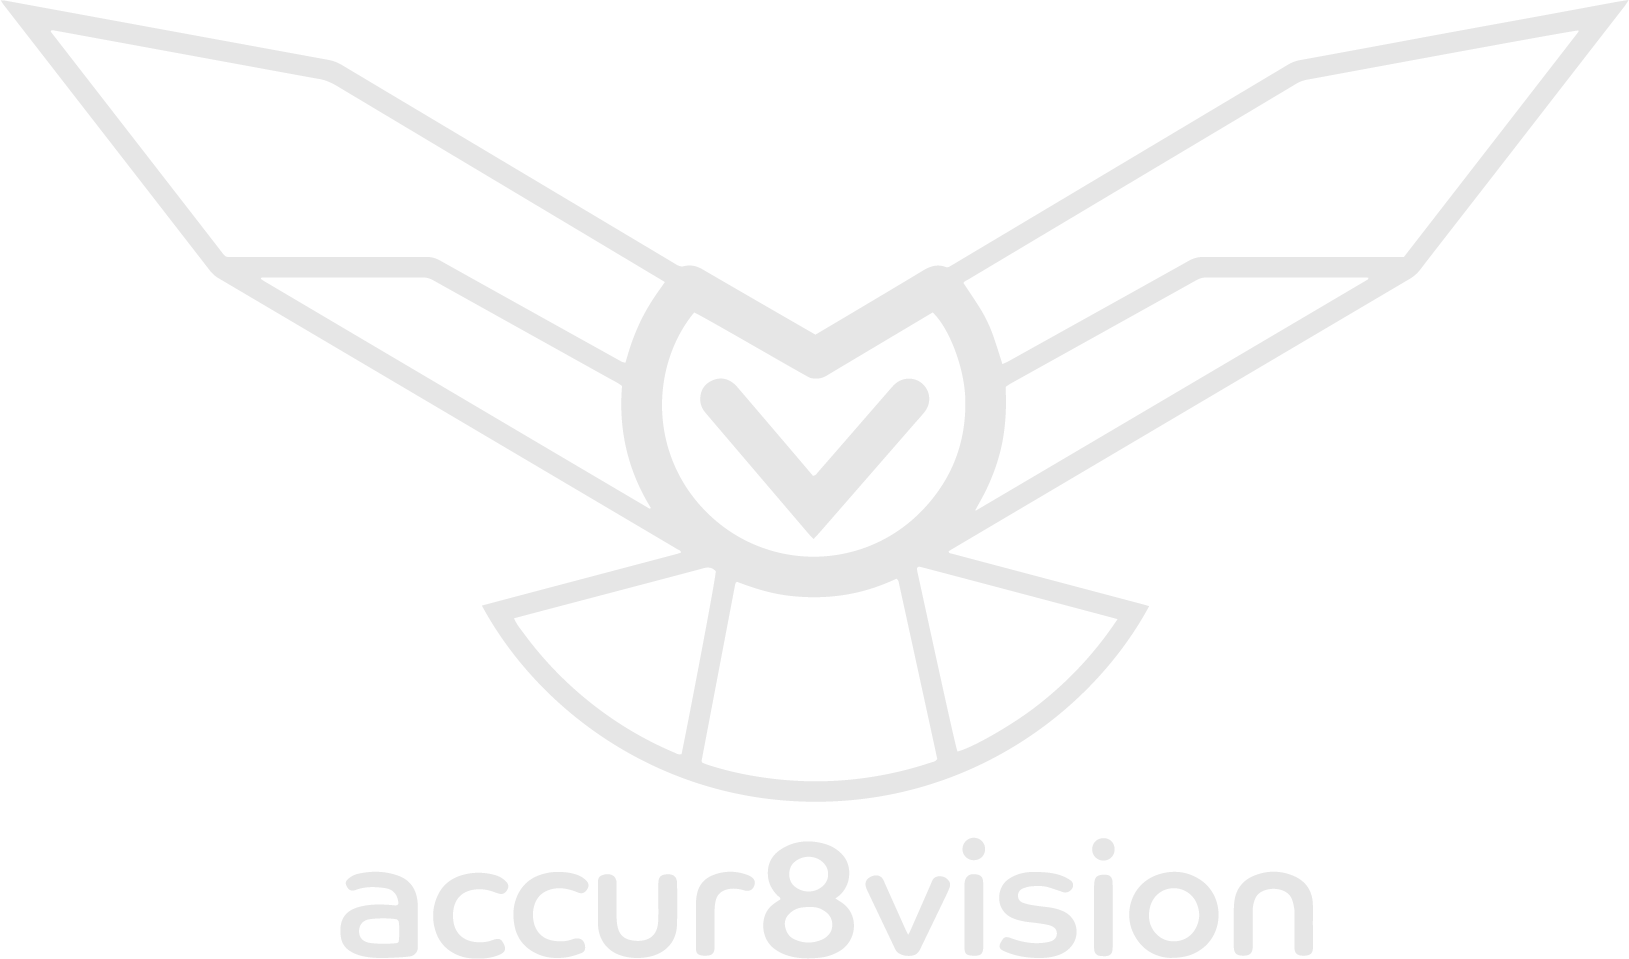 logo Accur8vision en niveaux de gris